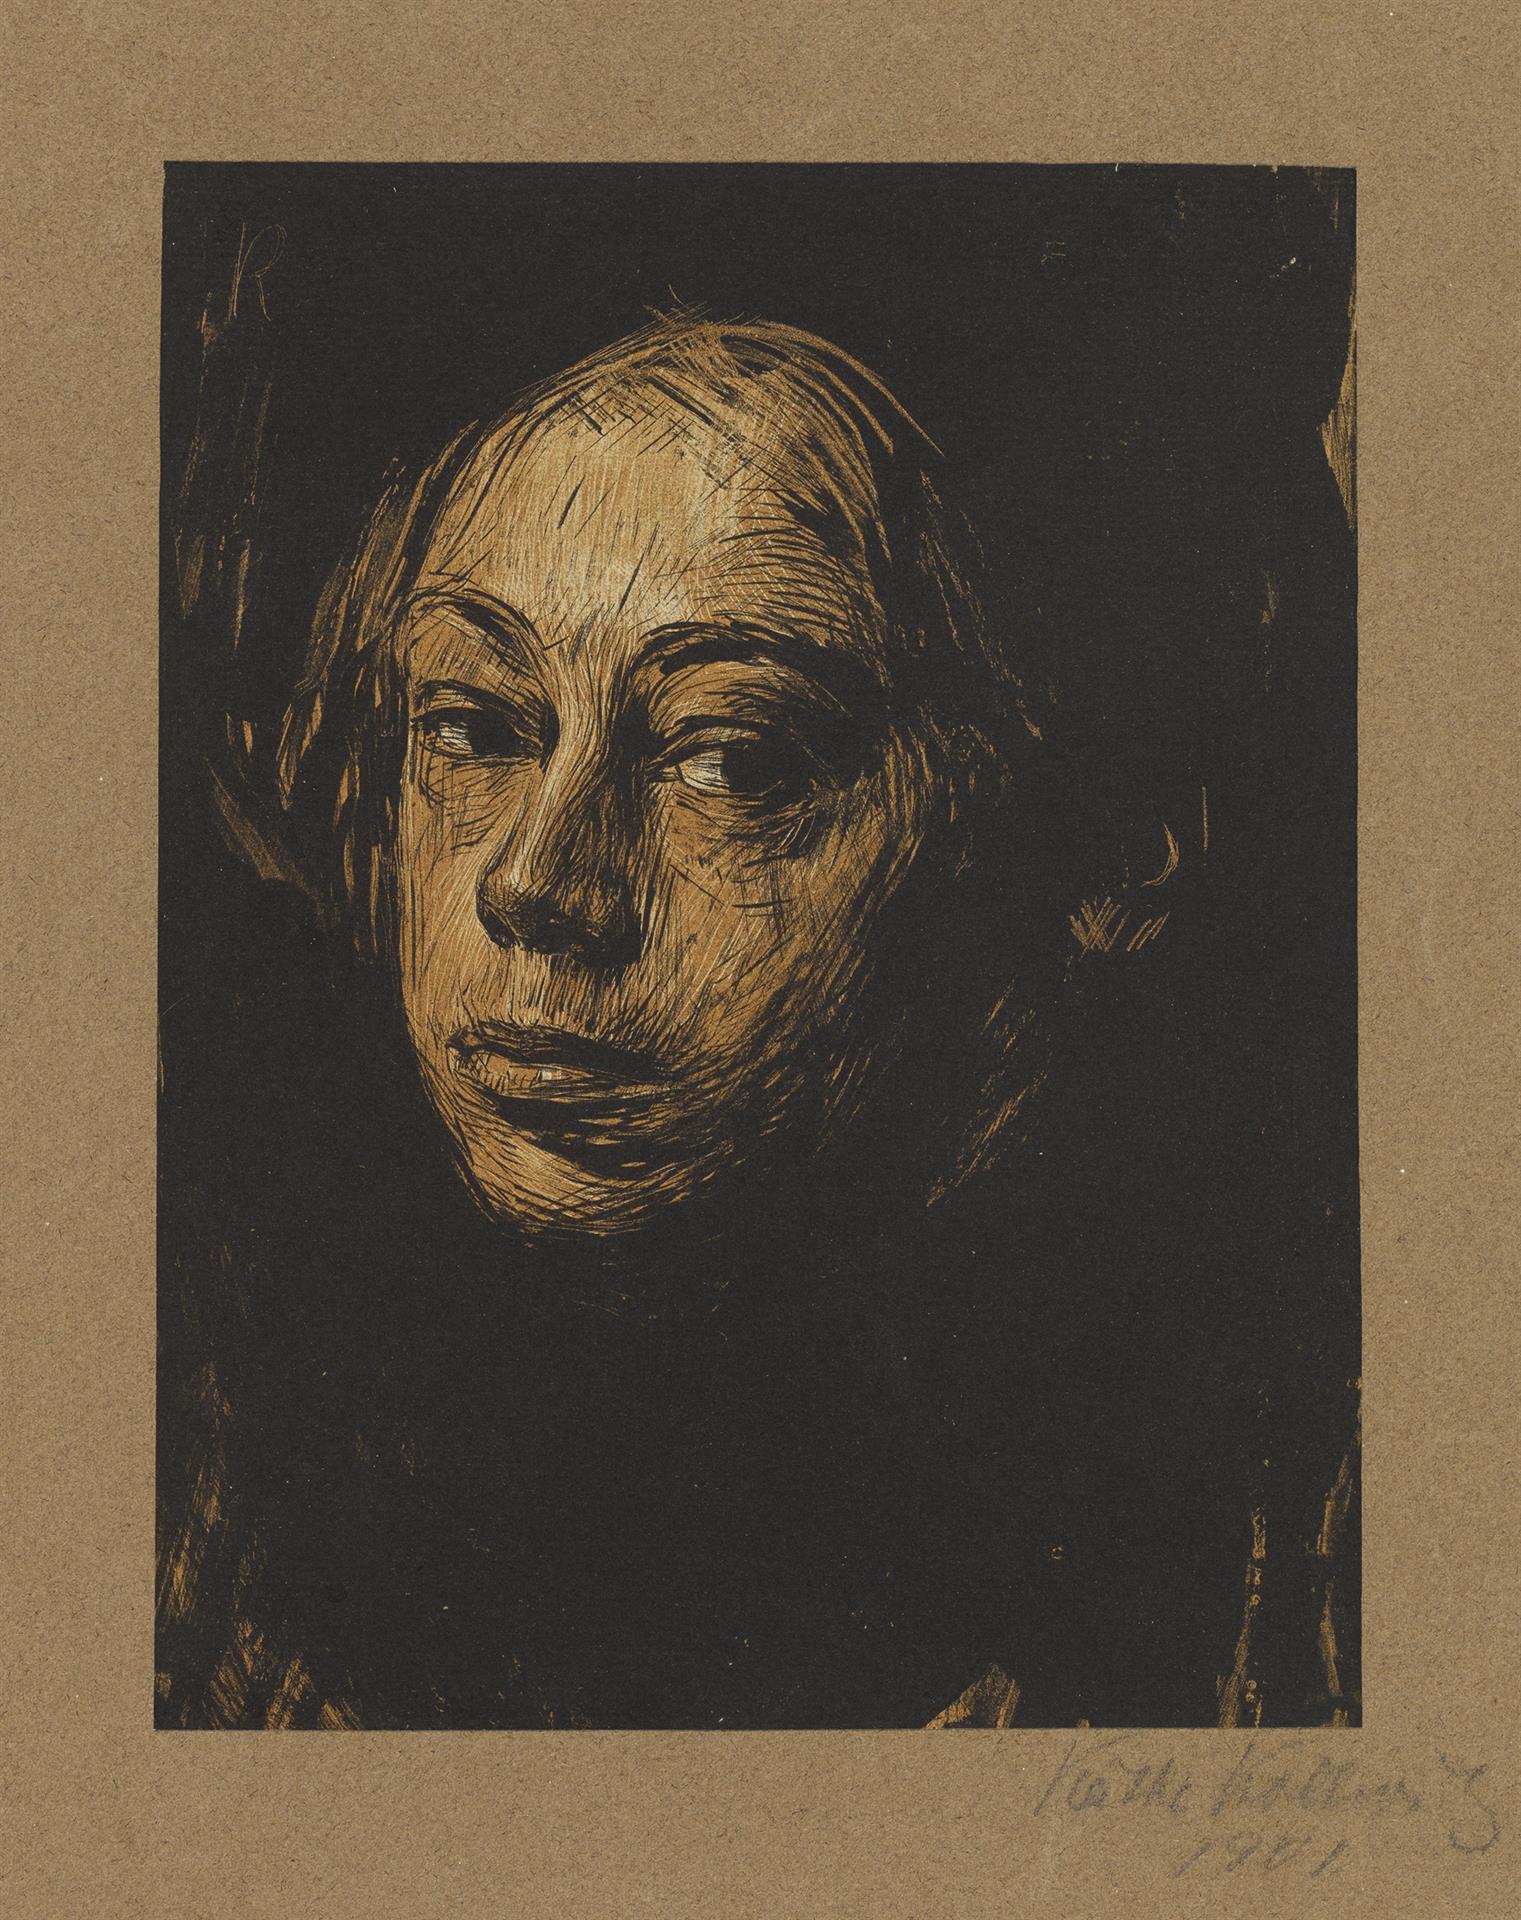 Käthe Kollwitz, Autoportrait de trois-quart gauche, 1901, lithographie au pinceau et à la plume en deux couleurs, grattoirs, Kn 52 I